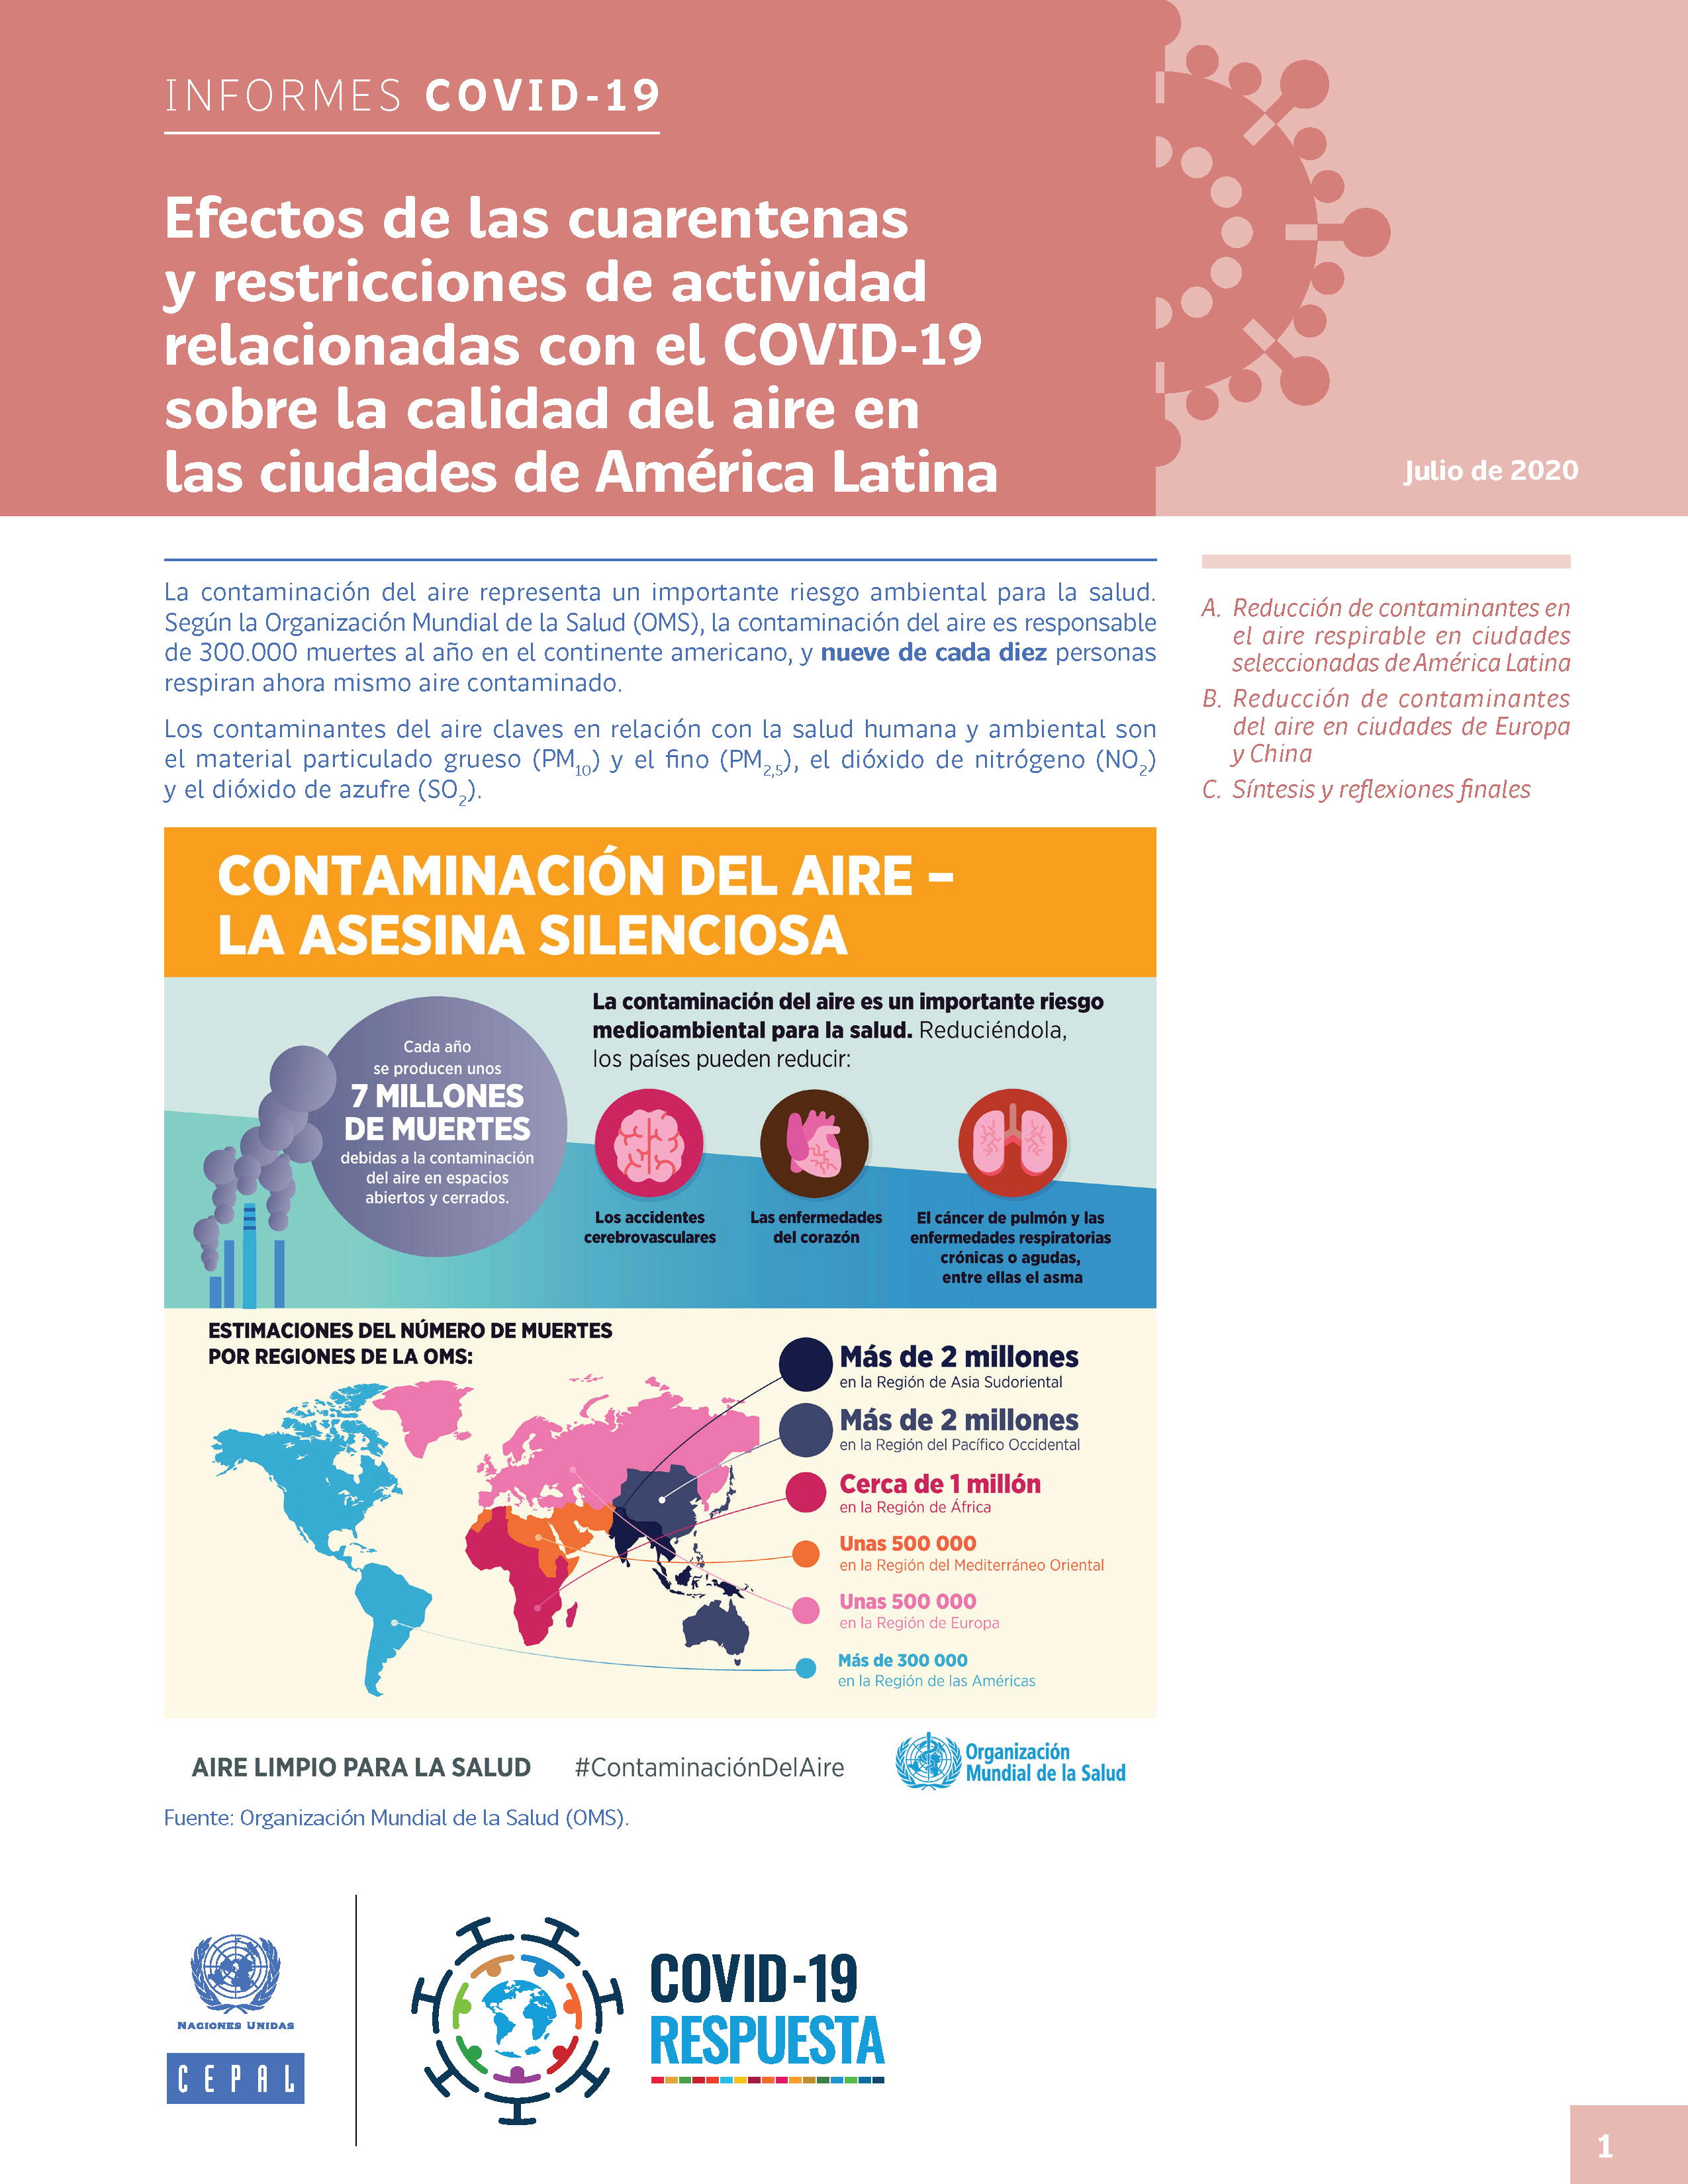 image of Efectos de las cuarentenas y restricciones de actividad relacionadas con el COVID-19 sobre la calidad del aire en las ciudades de América Latina